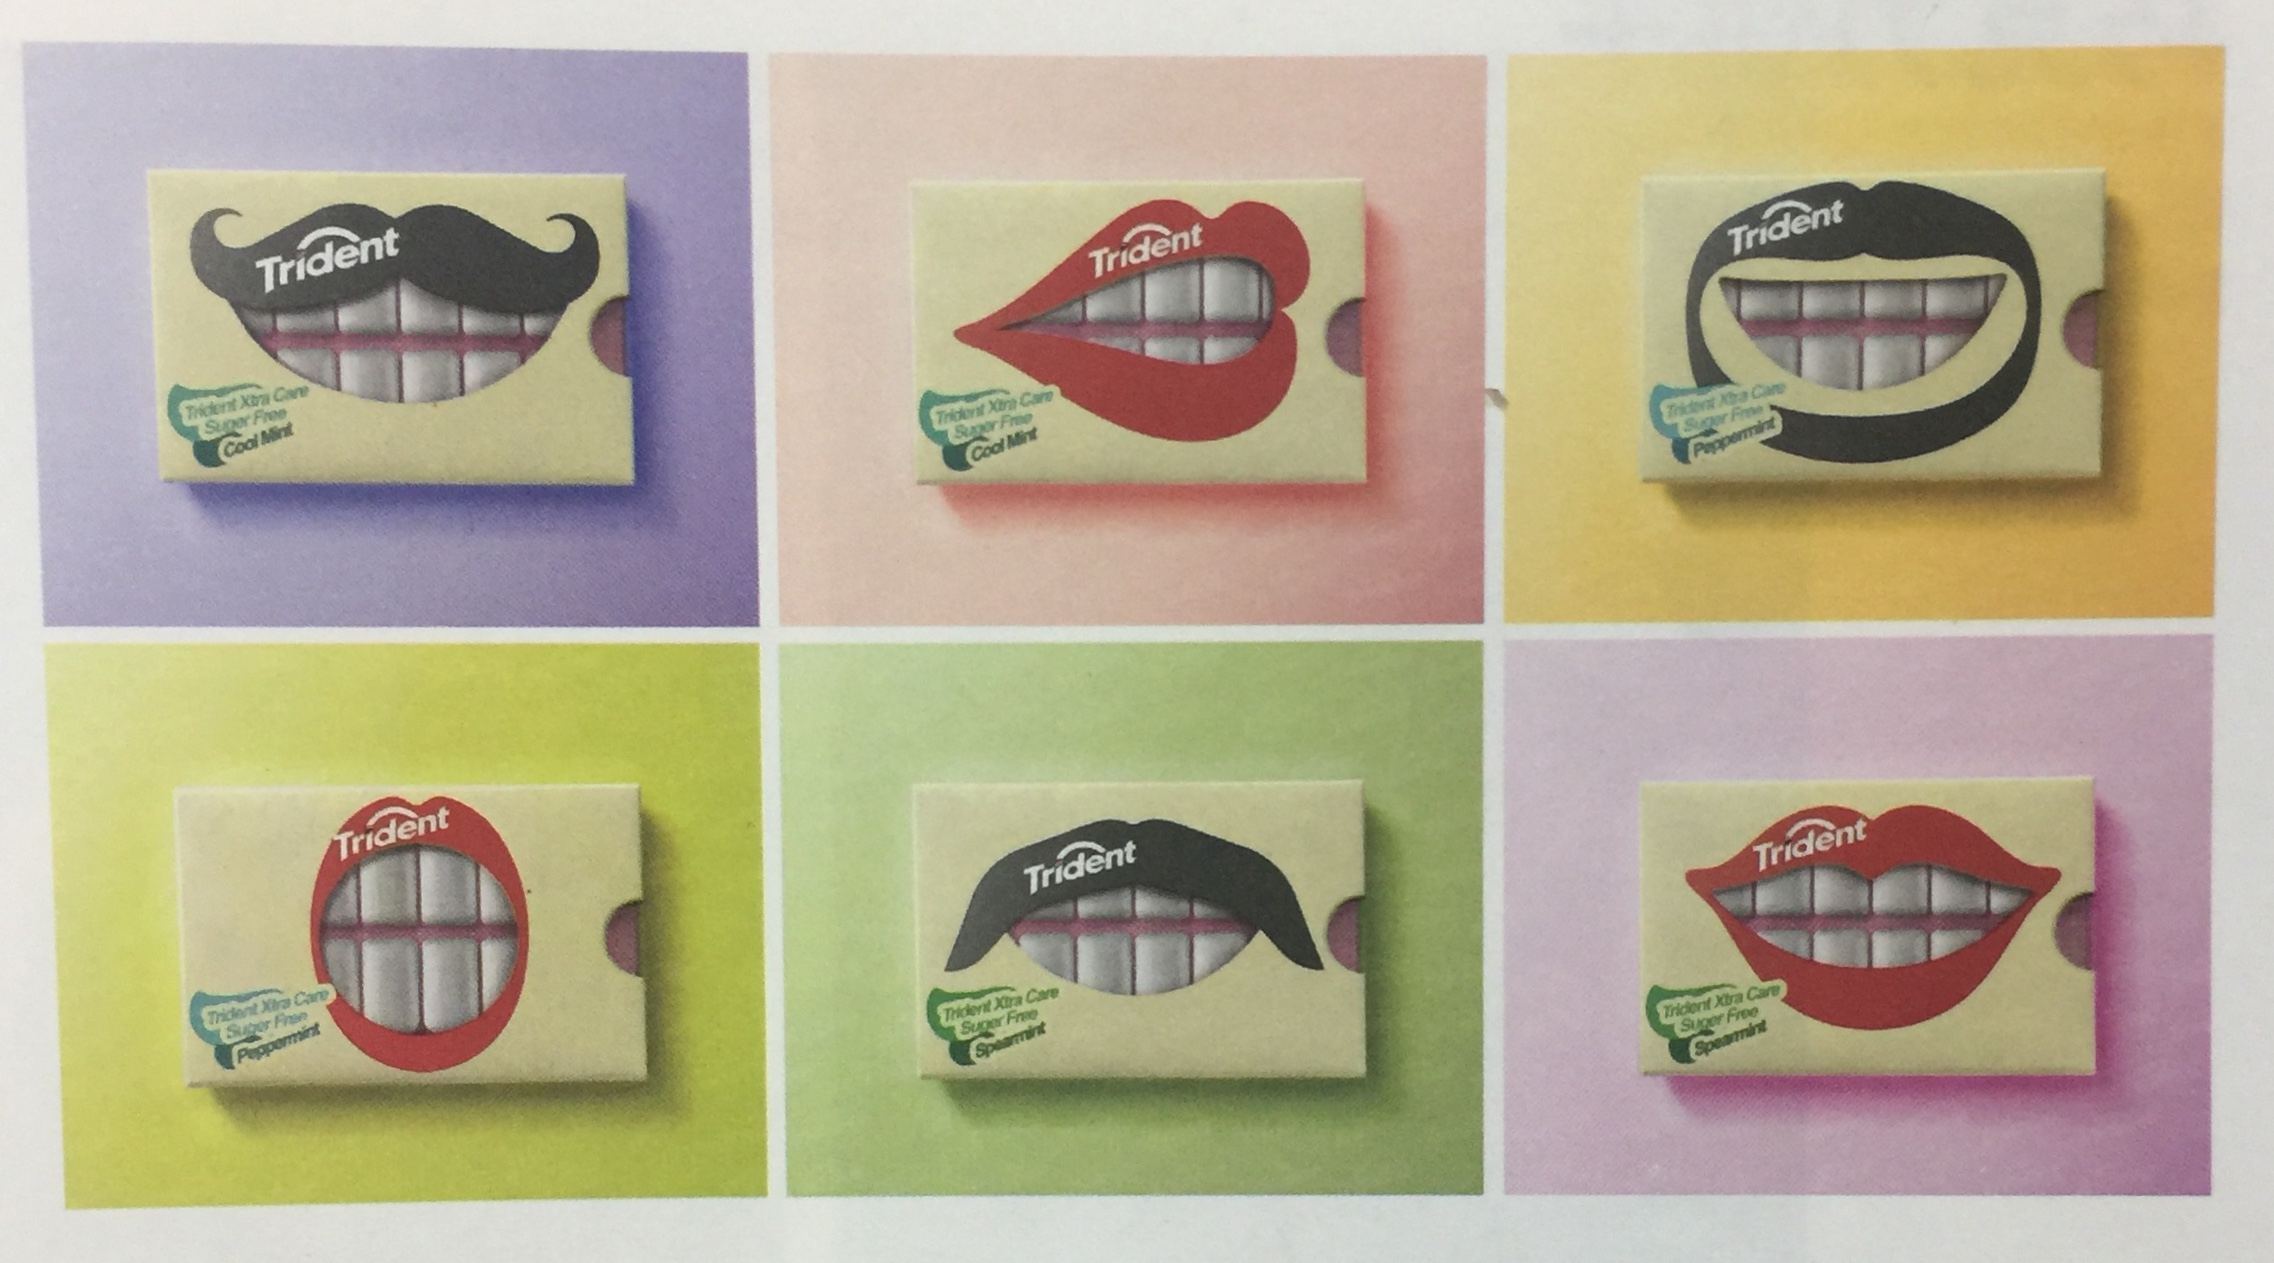 与消费者产生有趣互动的口香糖包装设计